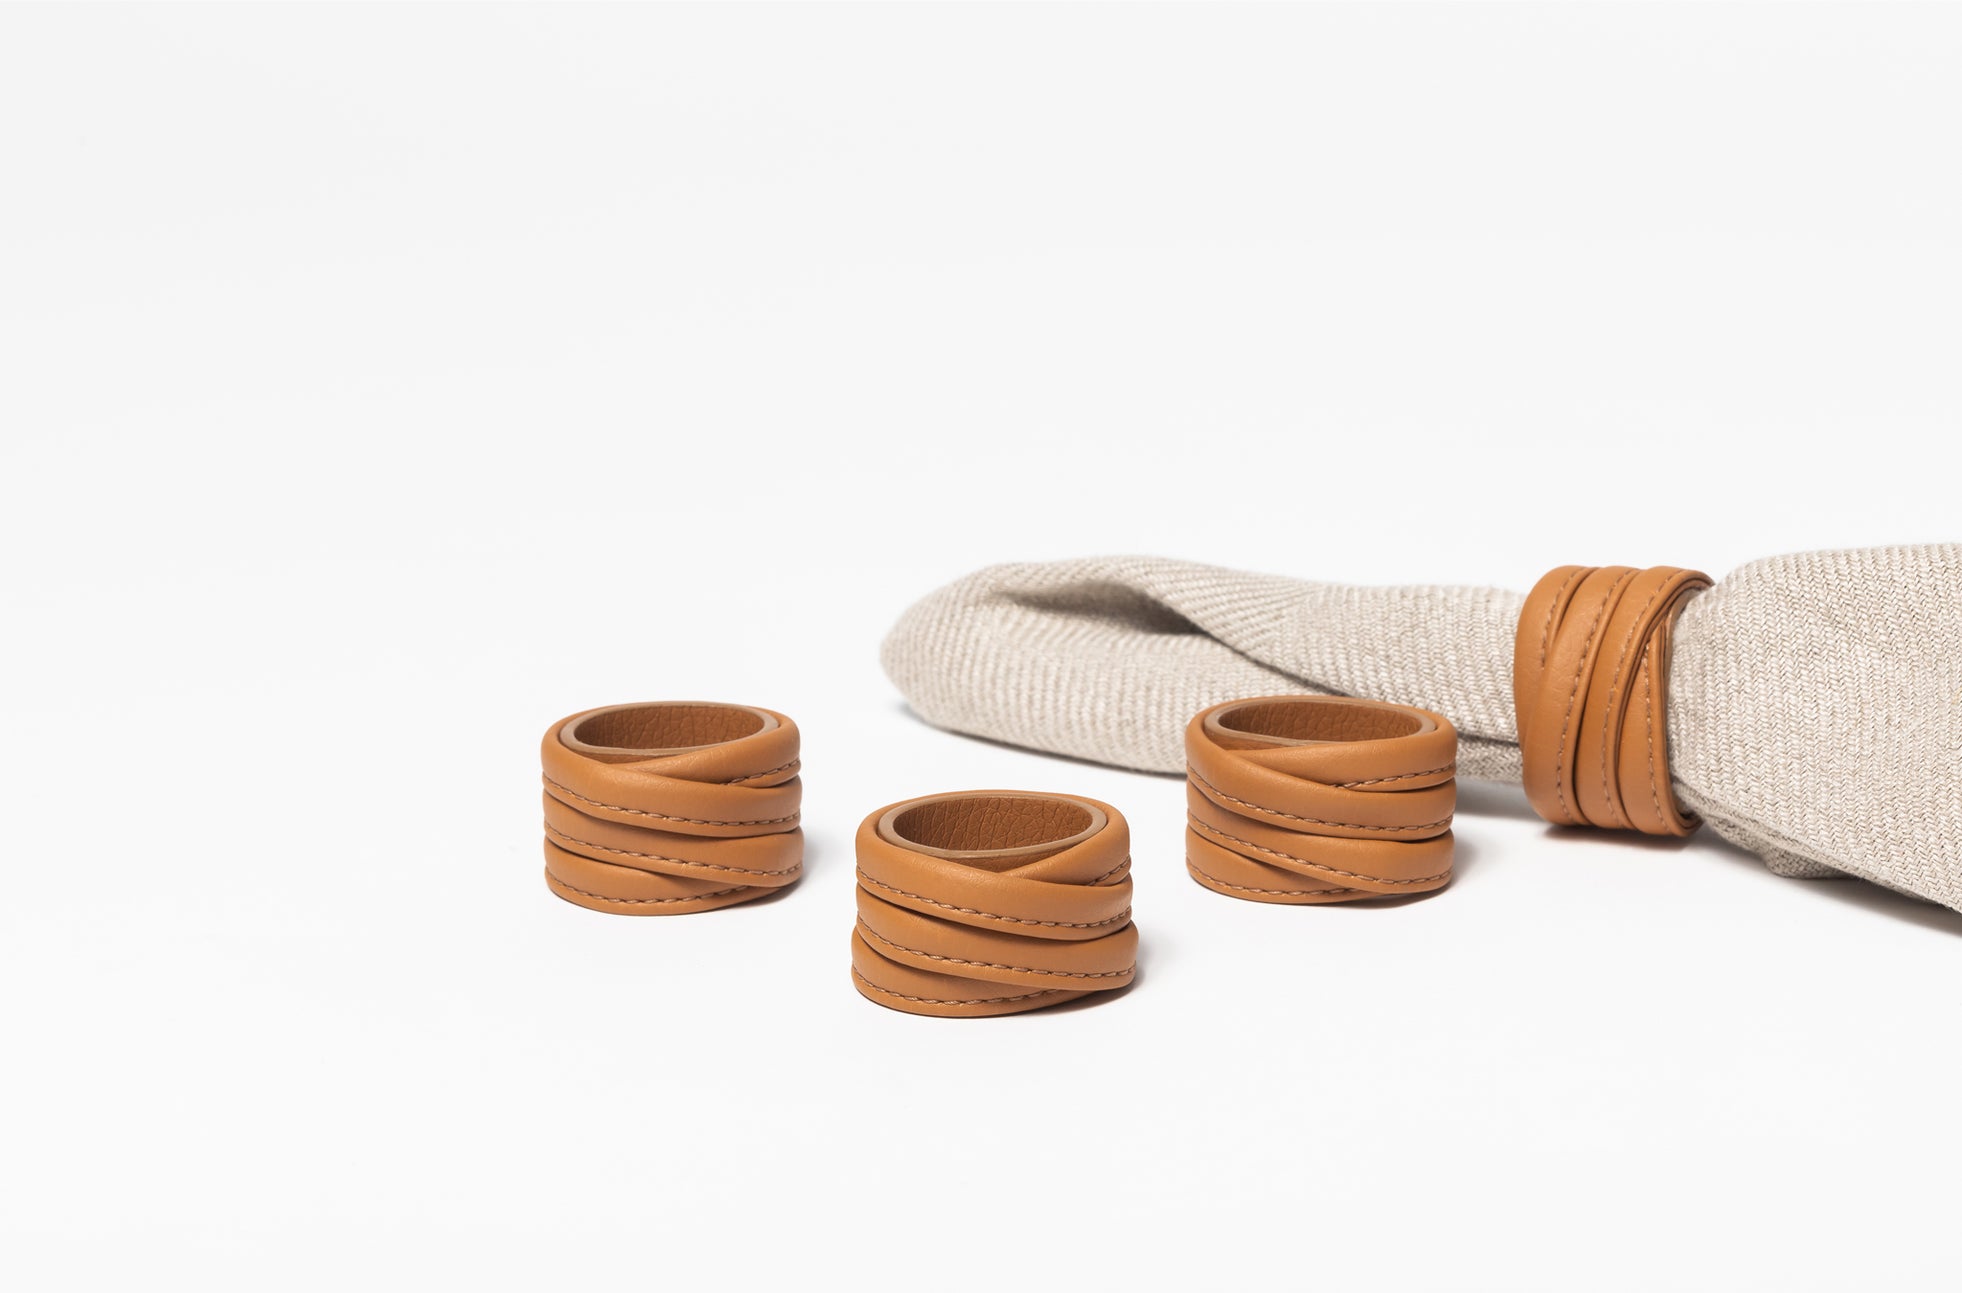 The Napkin Rings - Sample Sale in Technik-Leather in Caramel image 2